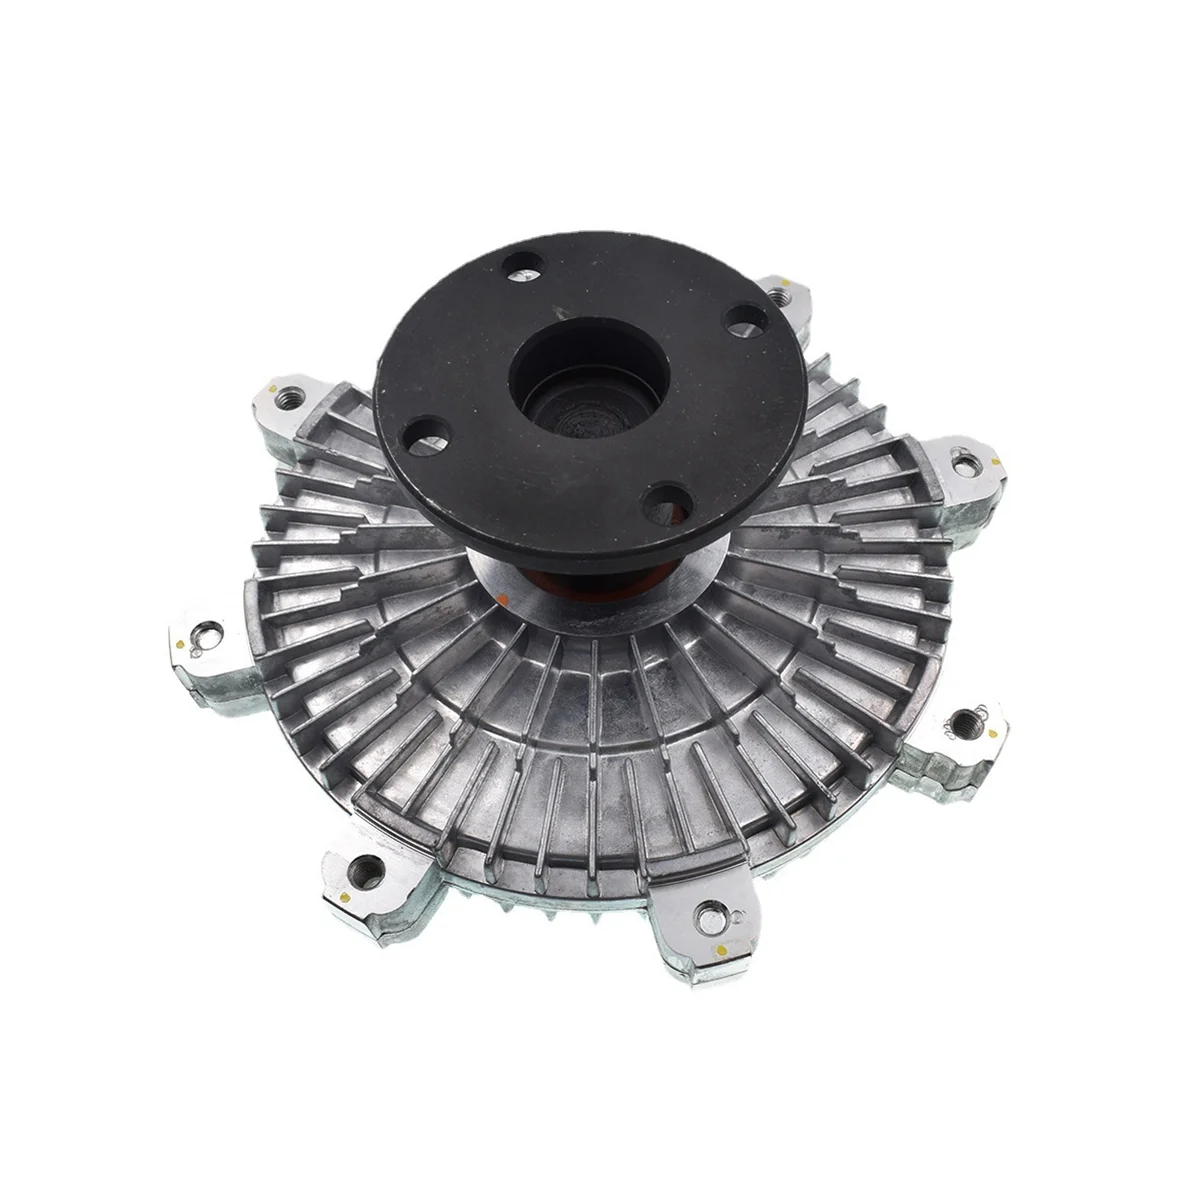 

Radiator Cooling Fan Clutch for MONTERO II 2Nd SPORT 6G72 96-00 MD335271